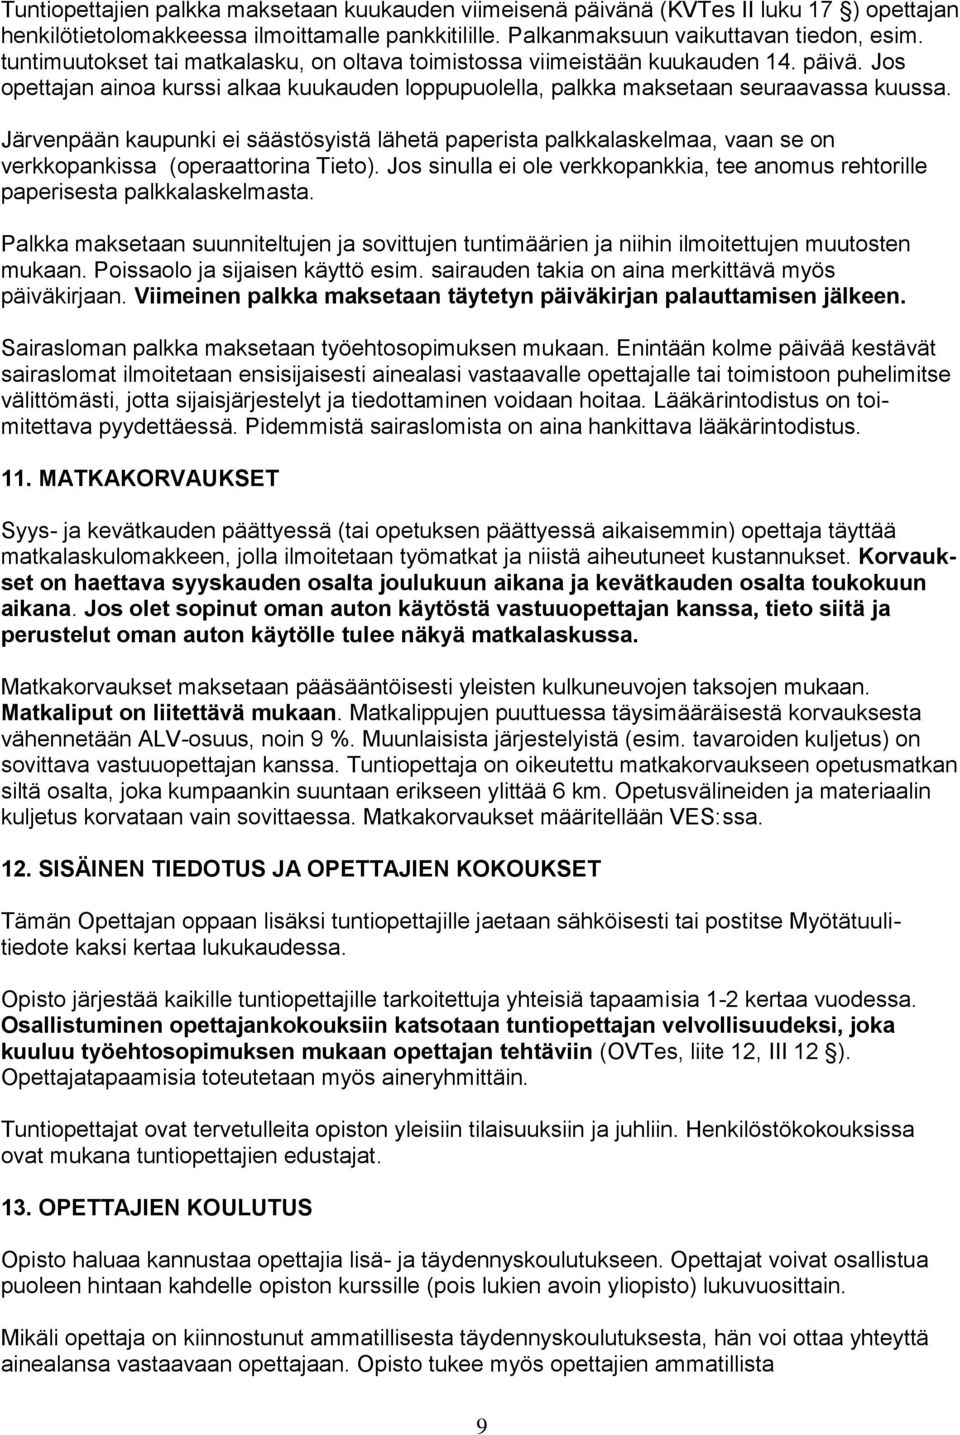 Järvenpään kaupunki ei säästösyistä lähetä paperista palkkalaskelmaa, vaan se on verkkopankissa (operaattorina Tieto).